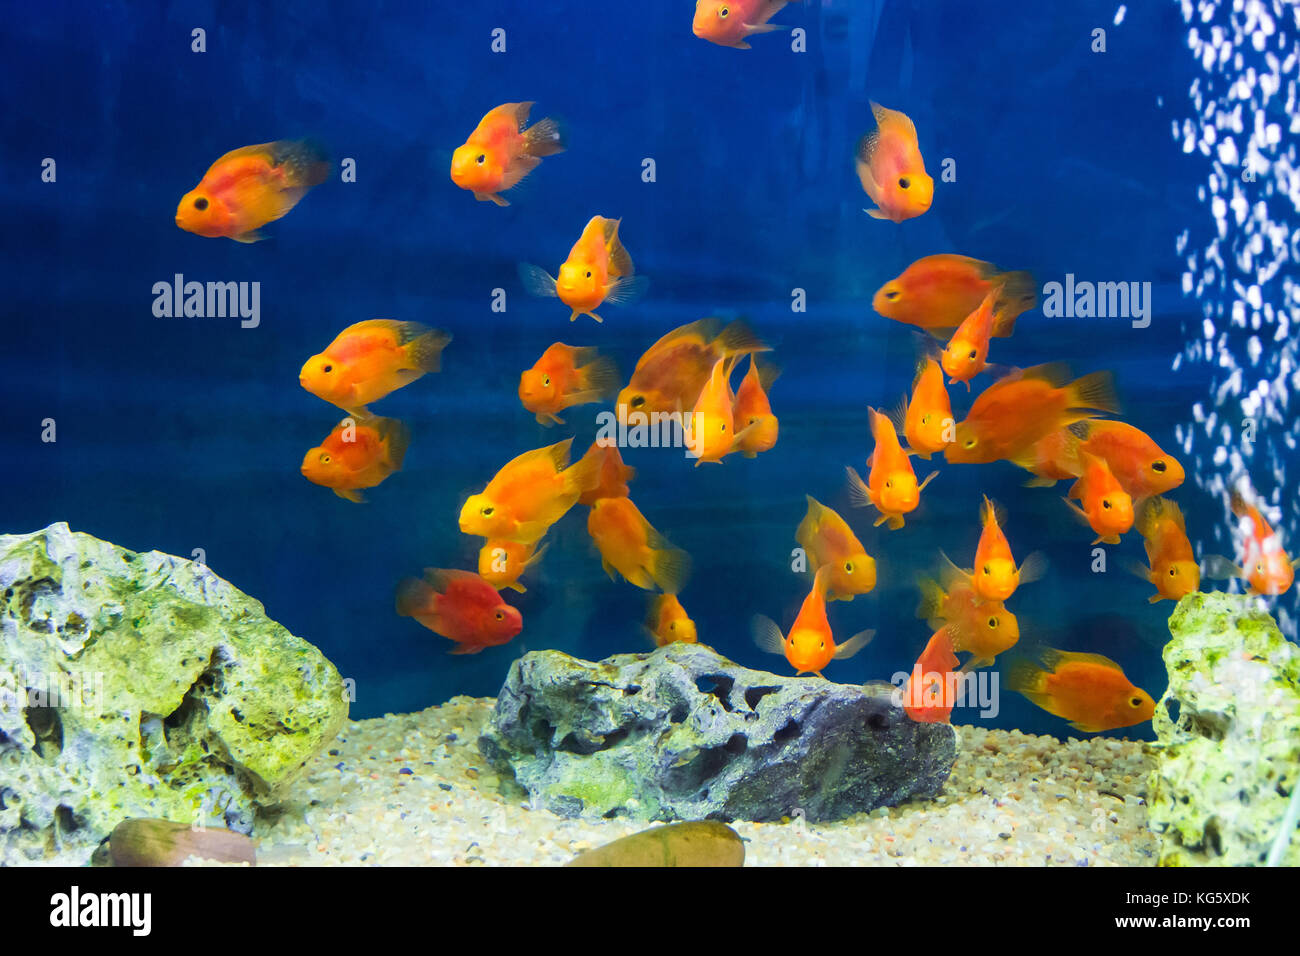 Photo of aquarium parrot fish in blue water Stock Photo